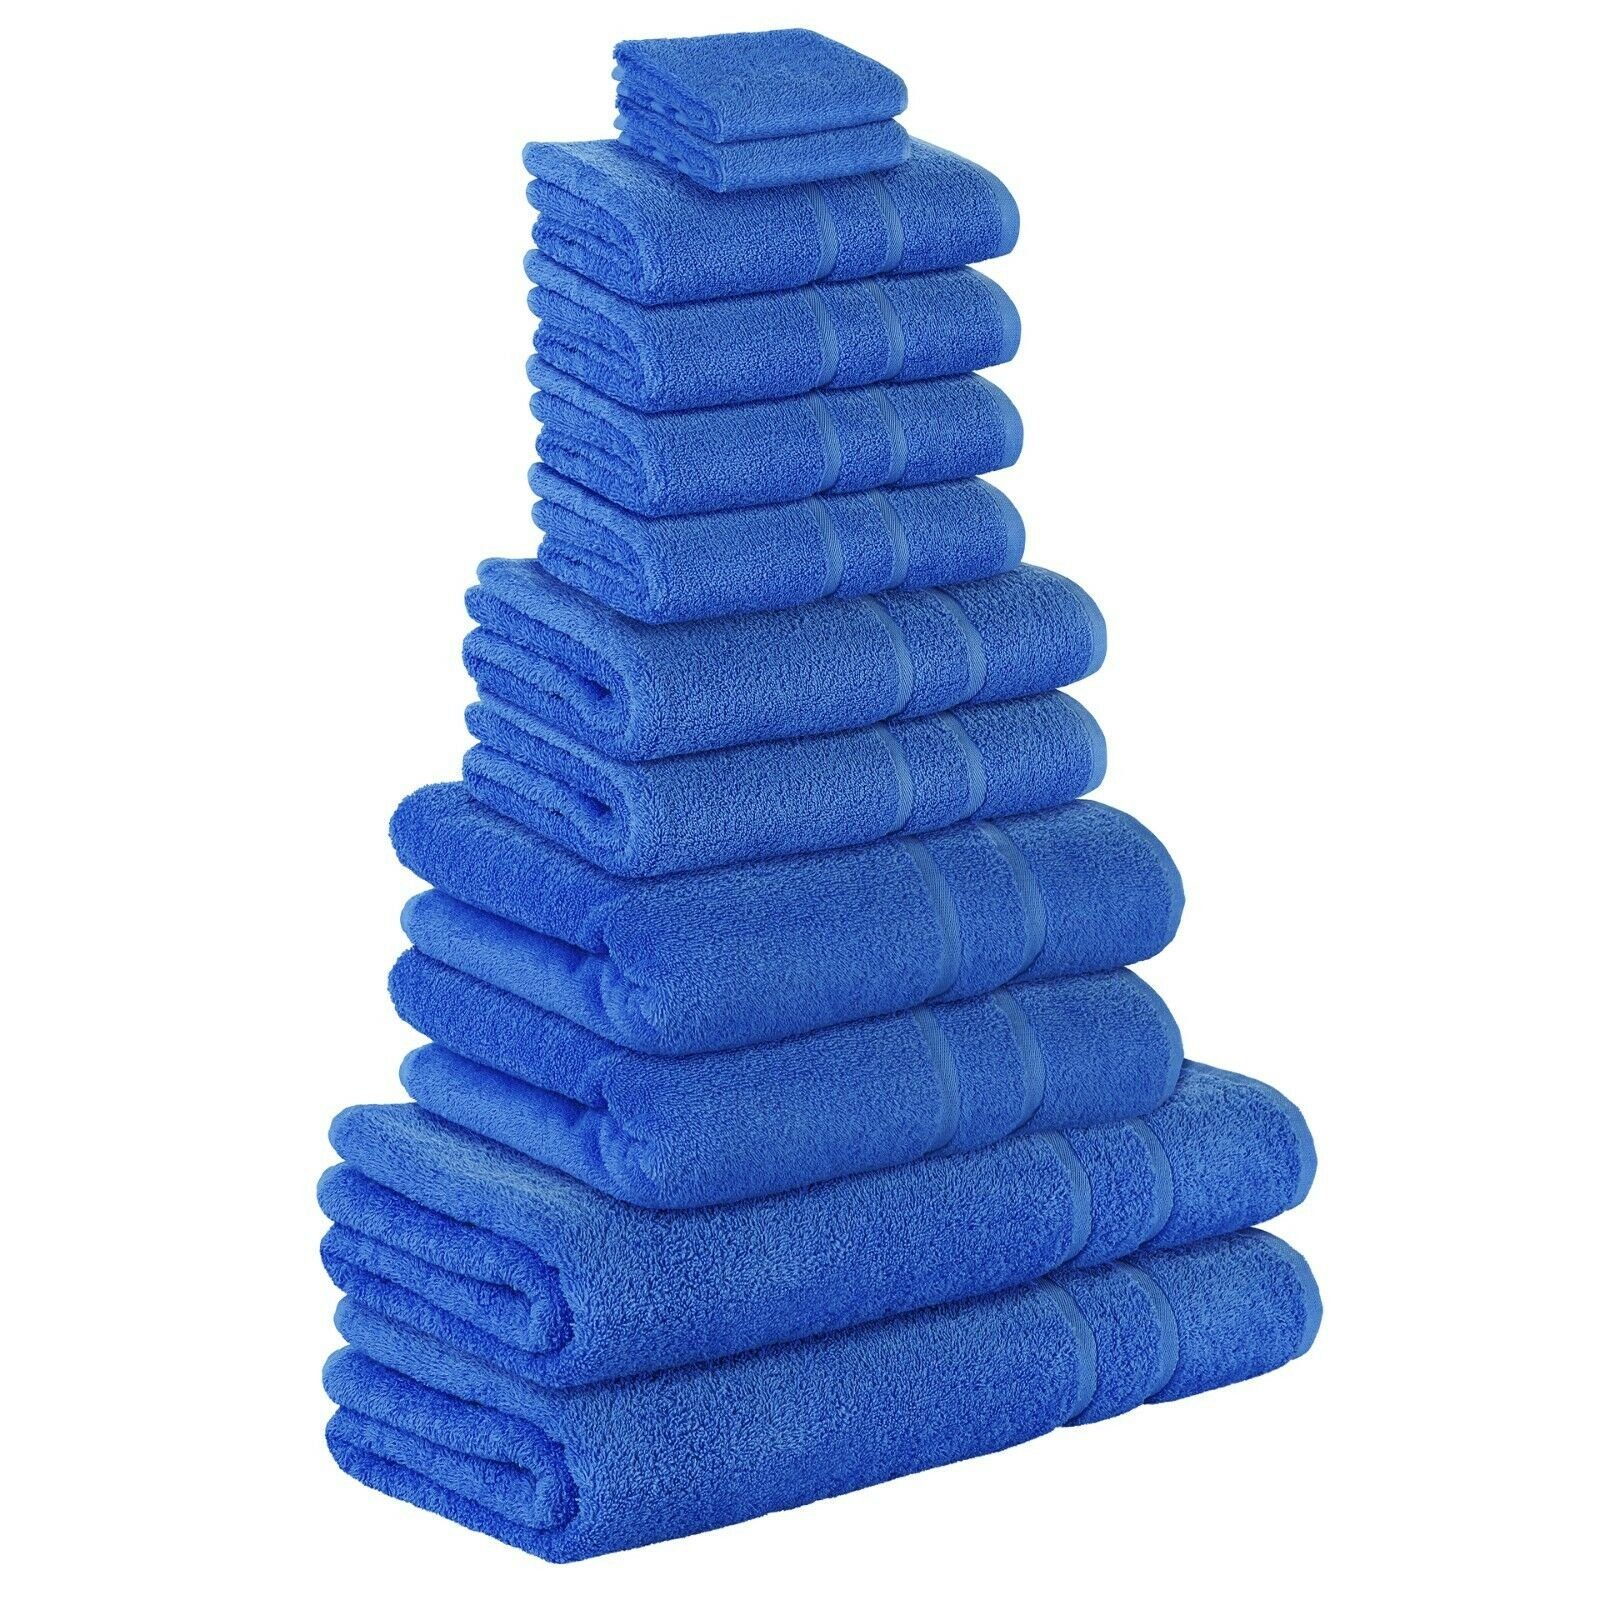 StickandShine Handtuch Set 4x Gästehandtuch 2x Handtücher 4x Duschtücher 2x Badetuch als SET in verschiedenen Farben (12 Teilig) 100% Baumwolle 500 GSM Frottee 12er Handtuch Pack, (Spar-SET) Blau